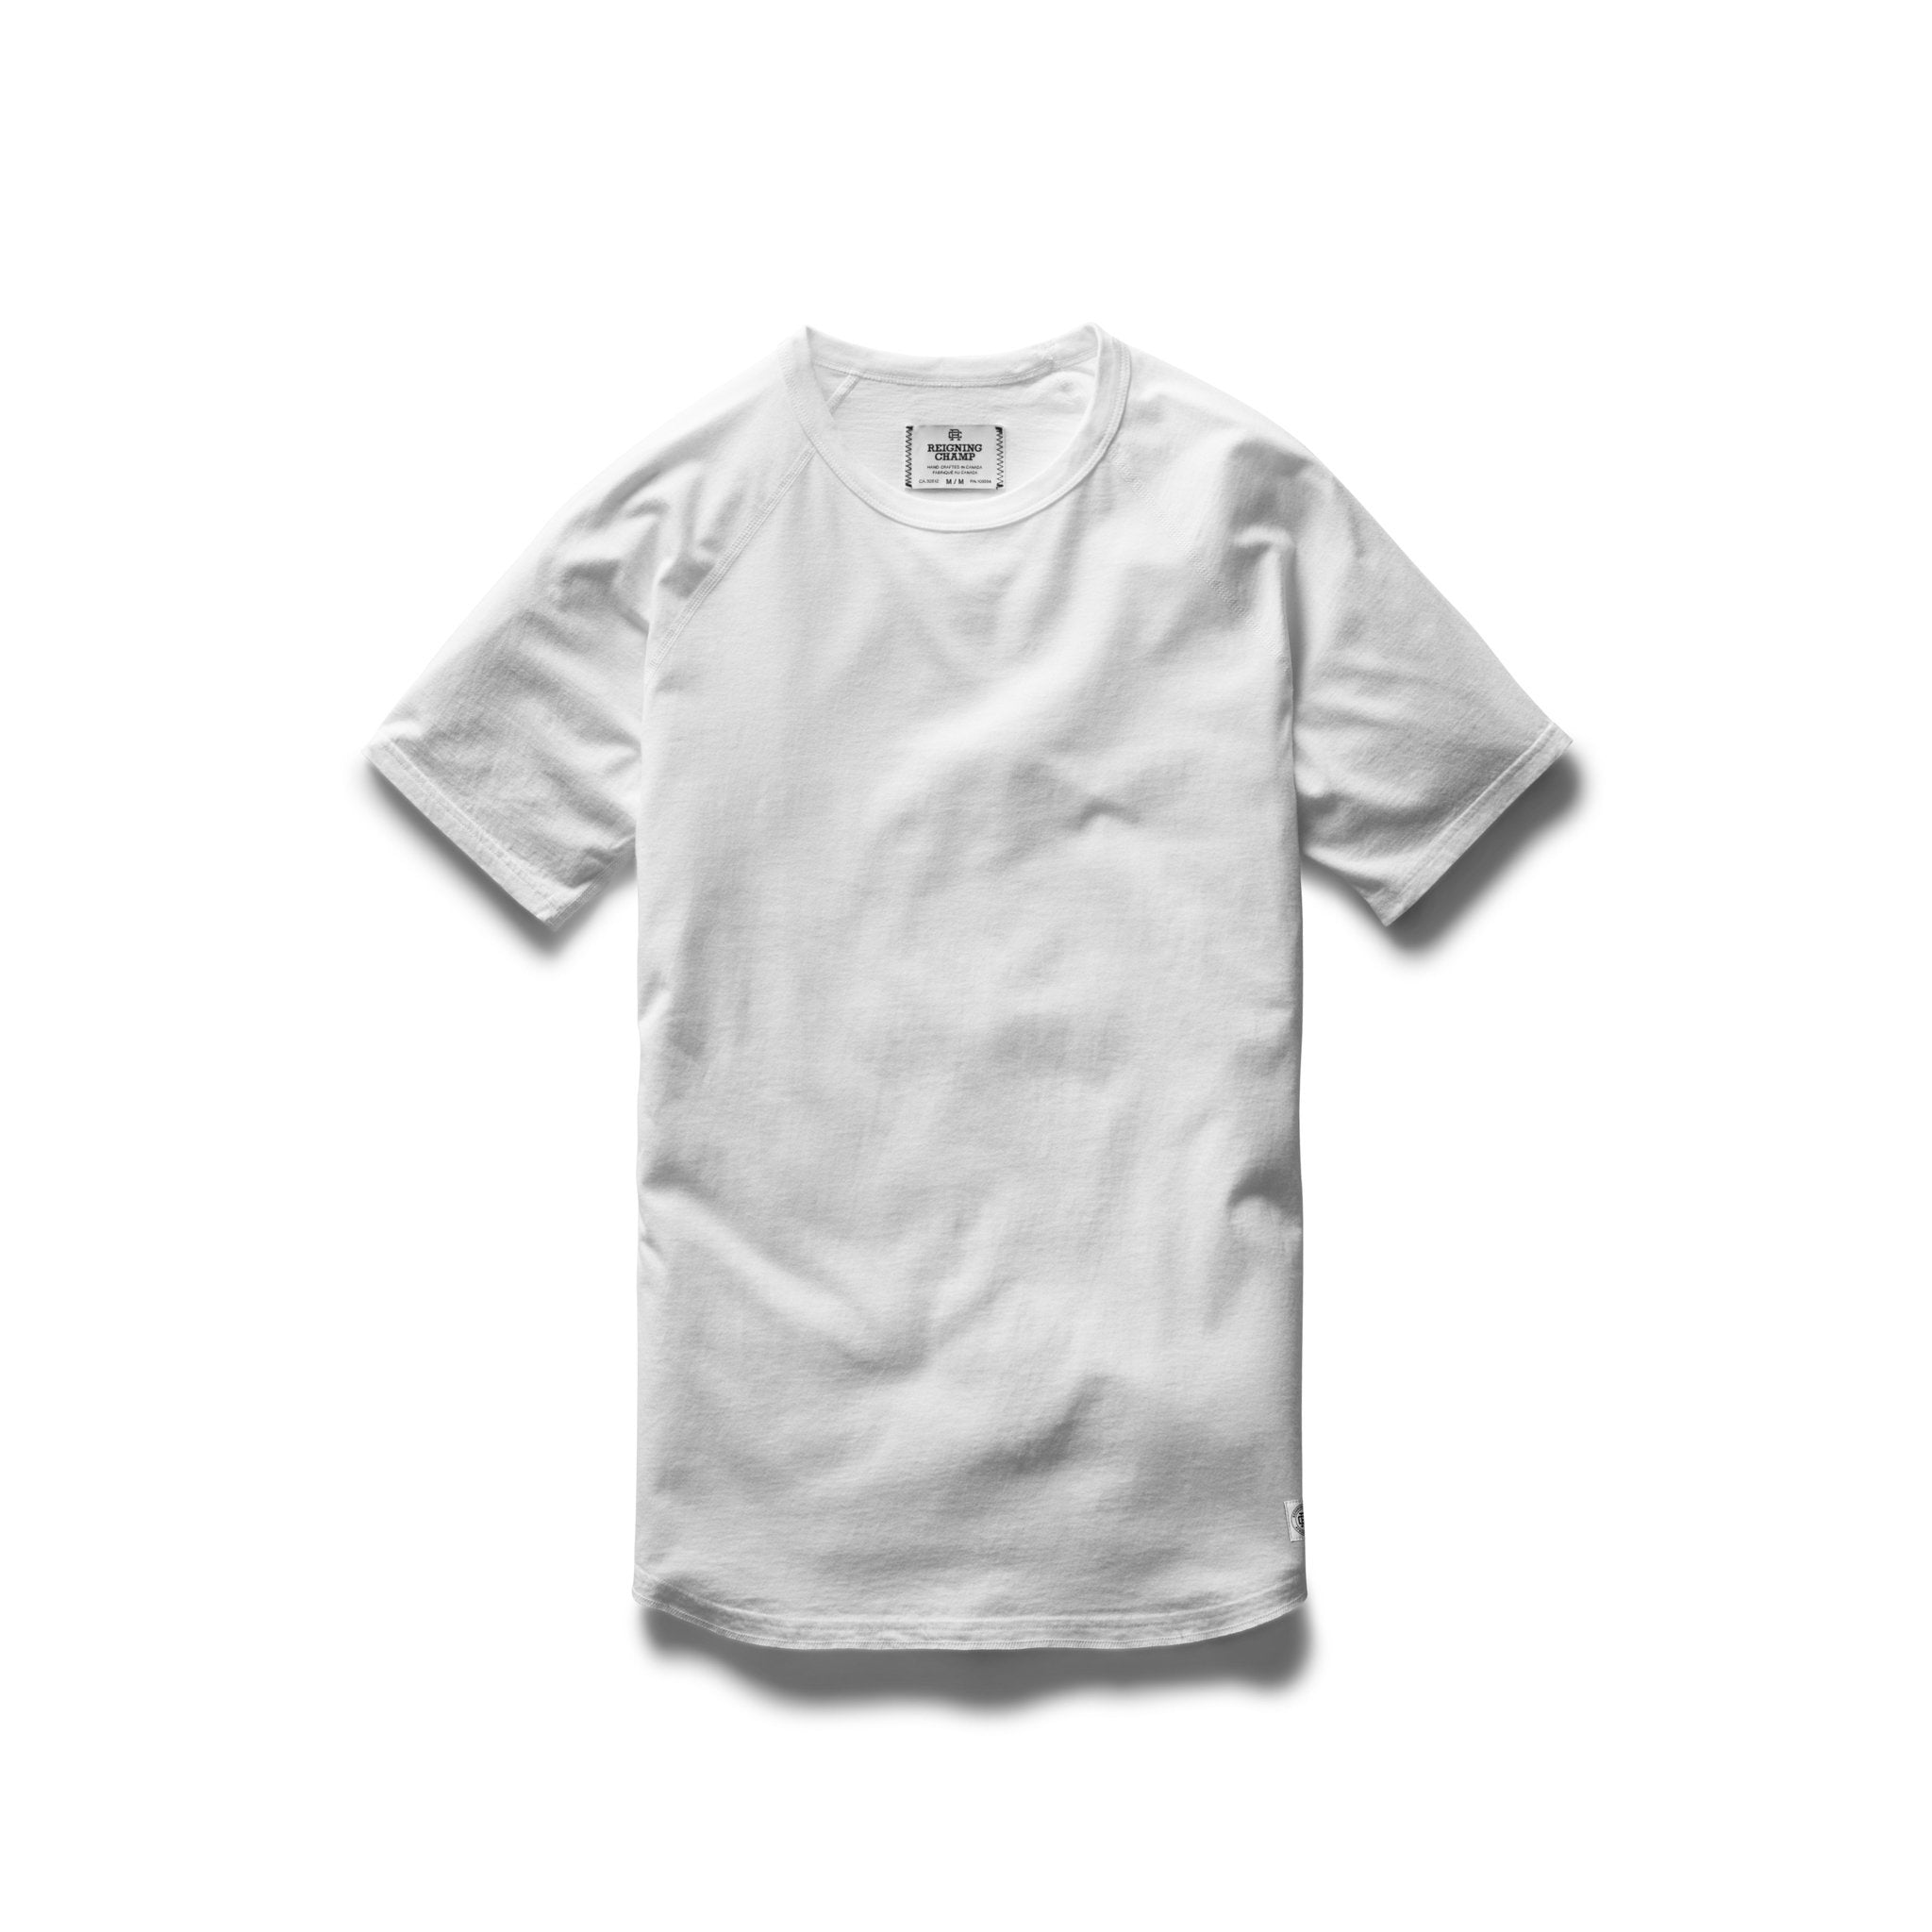 Cotton Jersey Raglan T-Shirt White